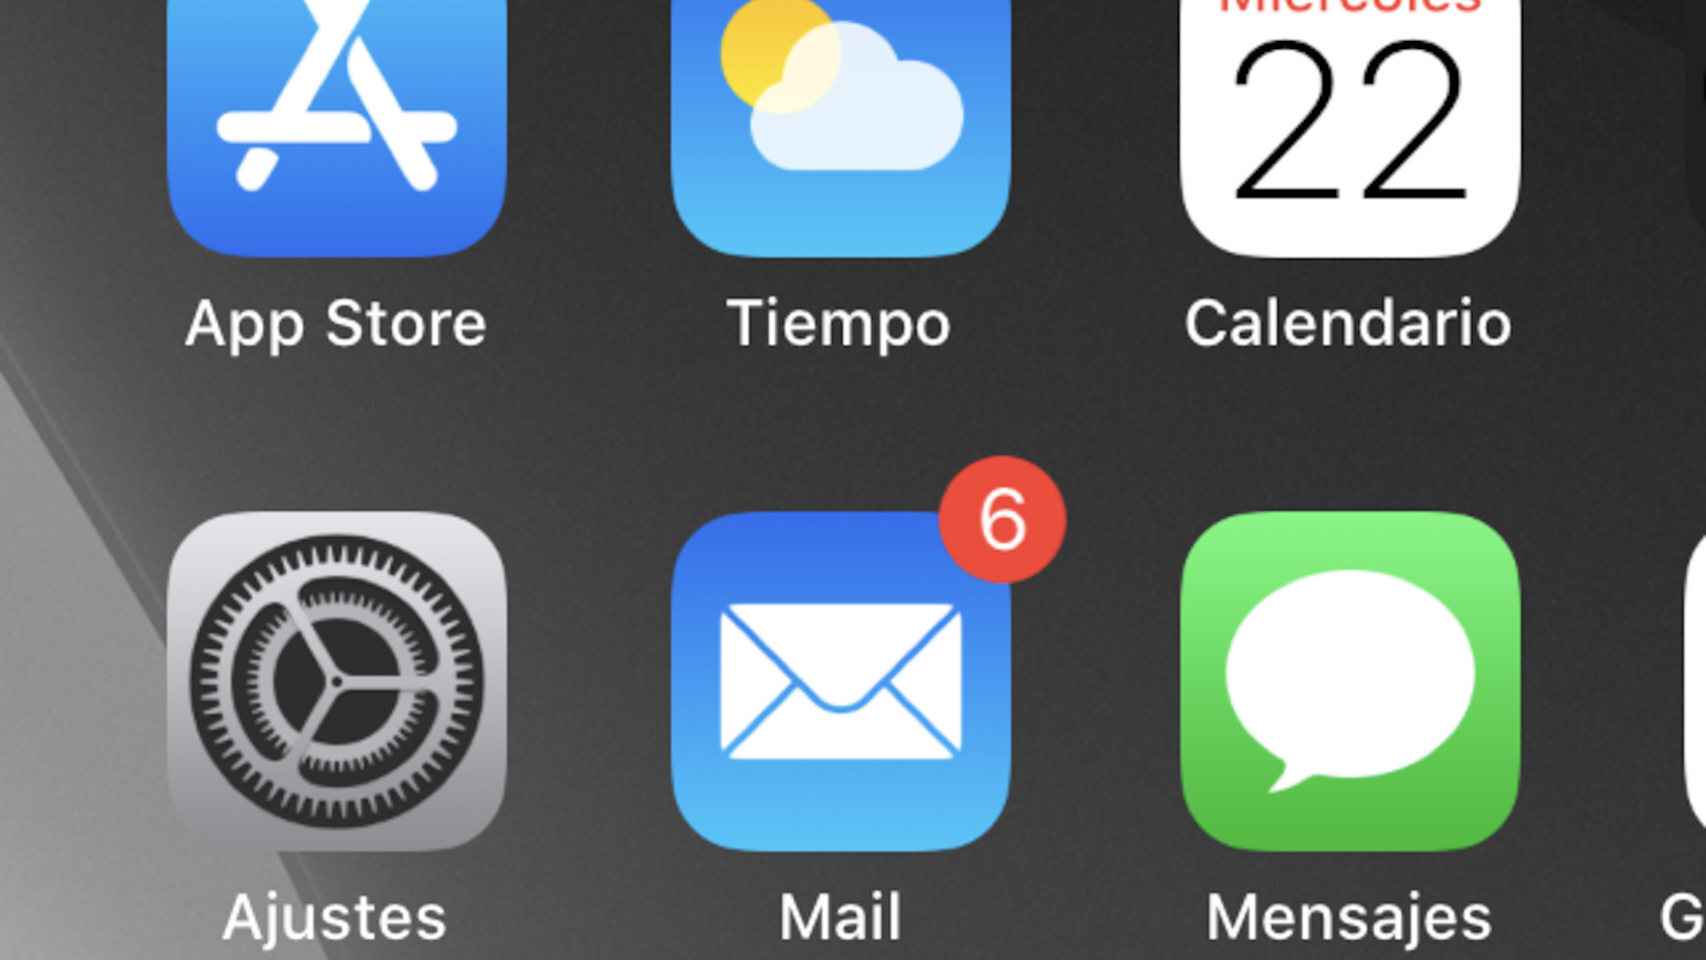 La app de Mail de Apple viene preinstalada en todos los dispositivos iOS